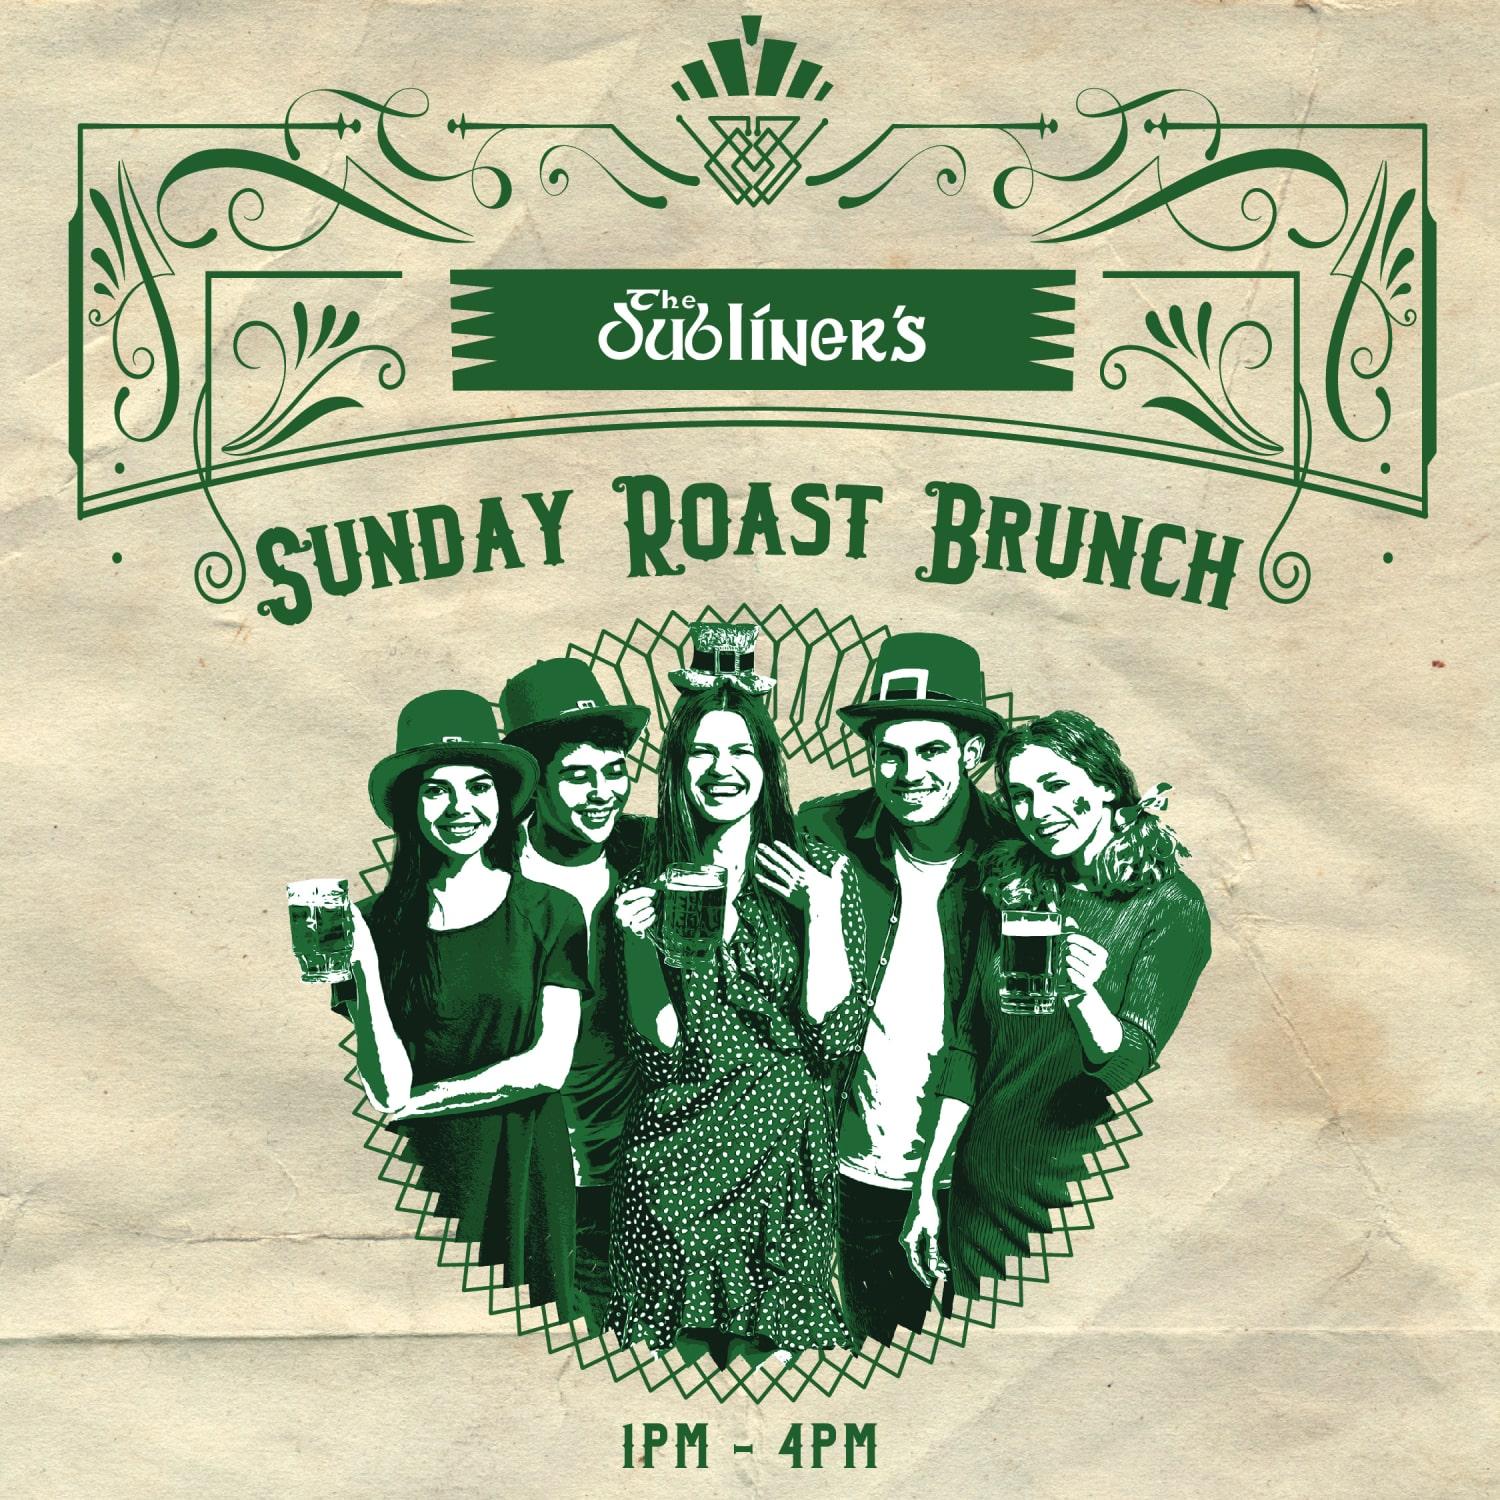 Sunday Roast Brunch at The Dubliner’s